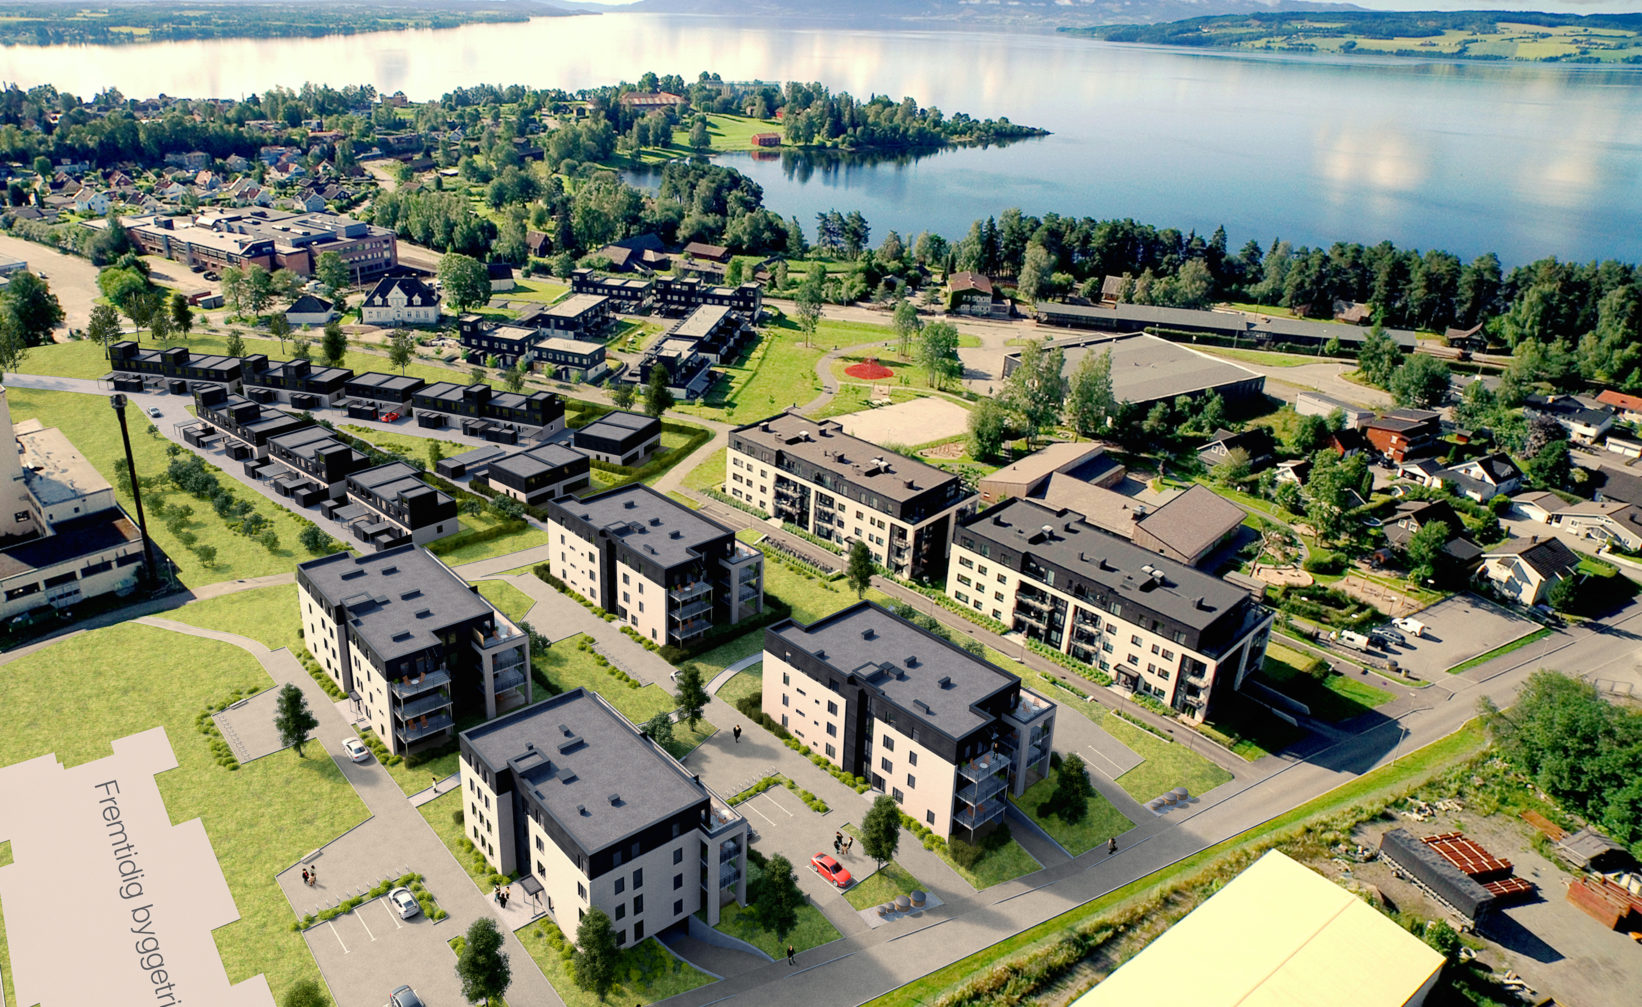 Et luftfoto av et leilighetskompleks nær en innsjø, laget av OKTAN Reklamebyrå i 2016 for salgsvisualisering.